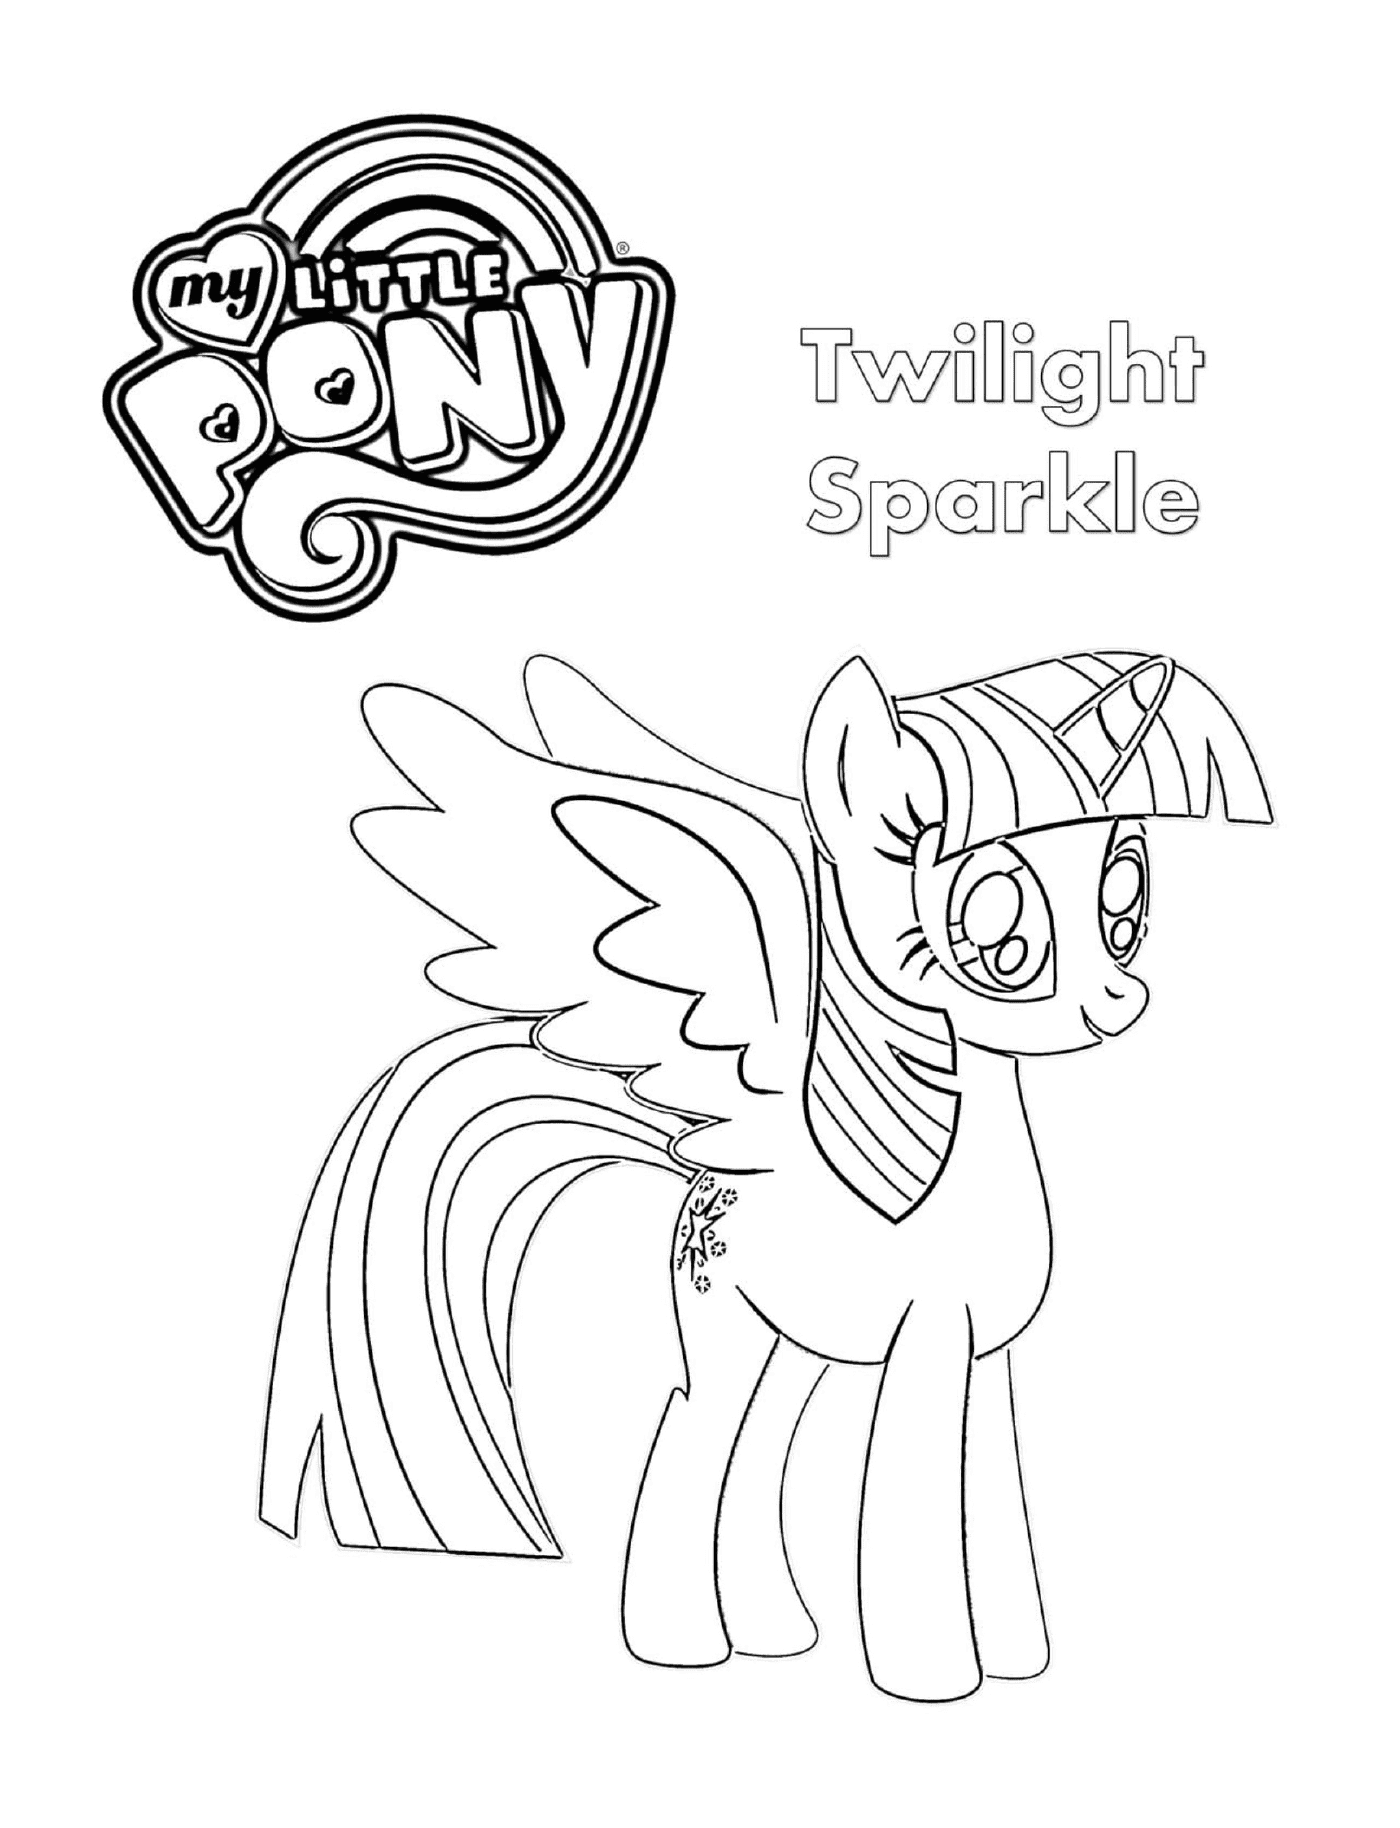  Twilight Sparkle, o pônei desenhado 